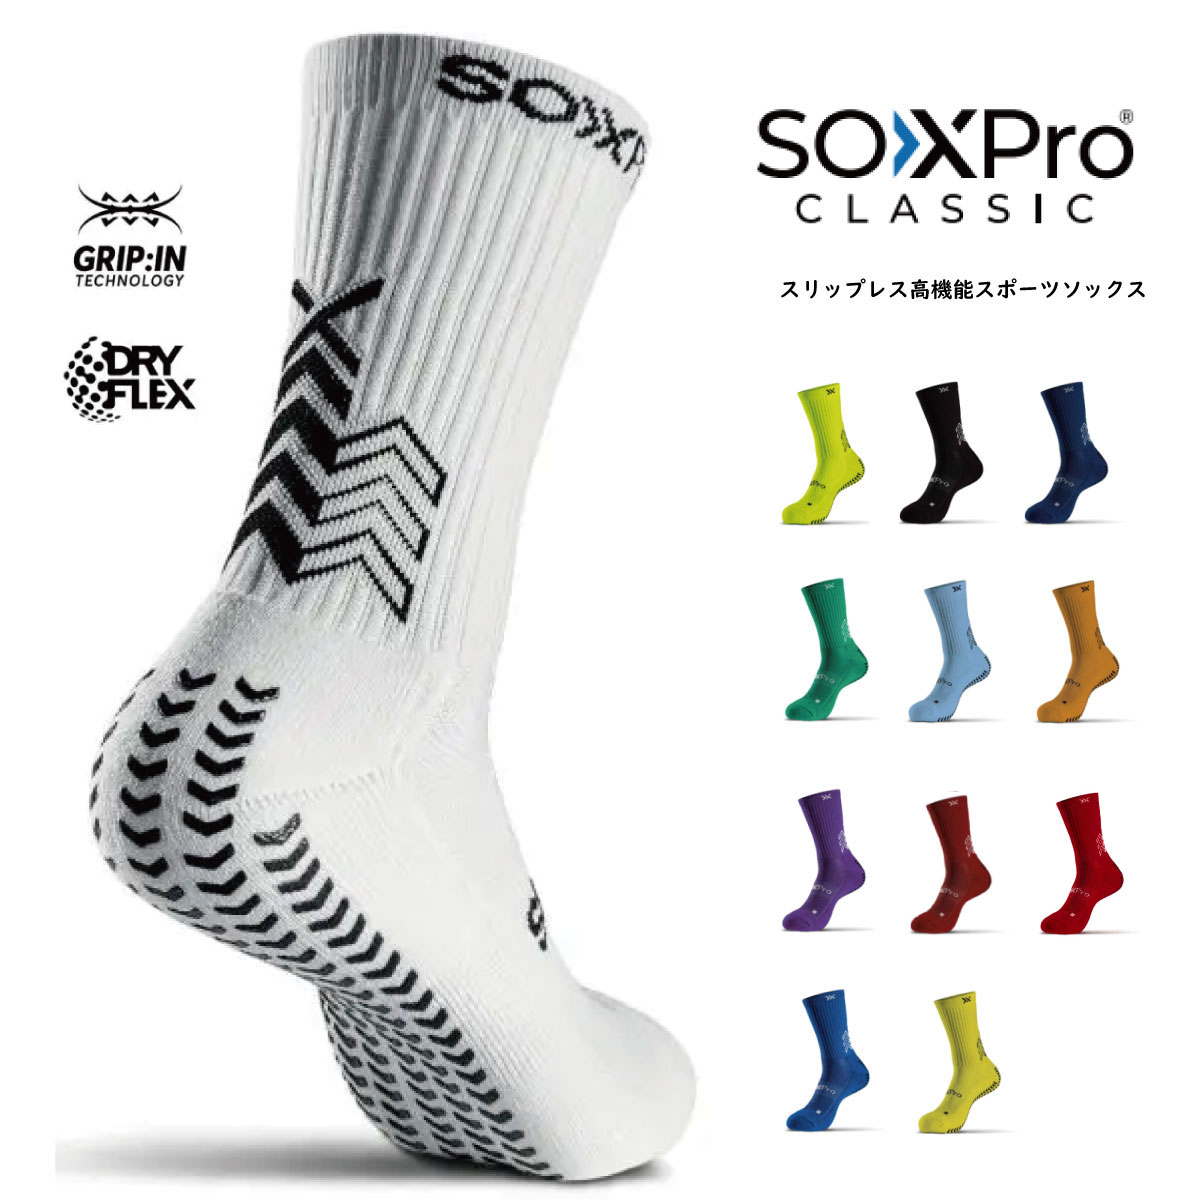 【メール便OK】GEAR X PRO(ギア エックス プロ) SOXPro Classic SOXPro Classic ソックスプロクラシック グリップソックス スポーツ 靴下 1